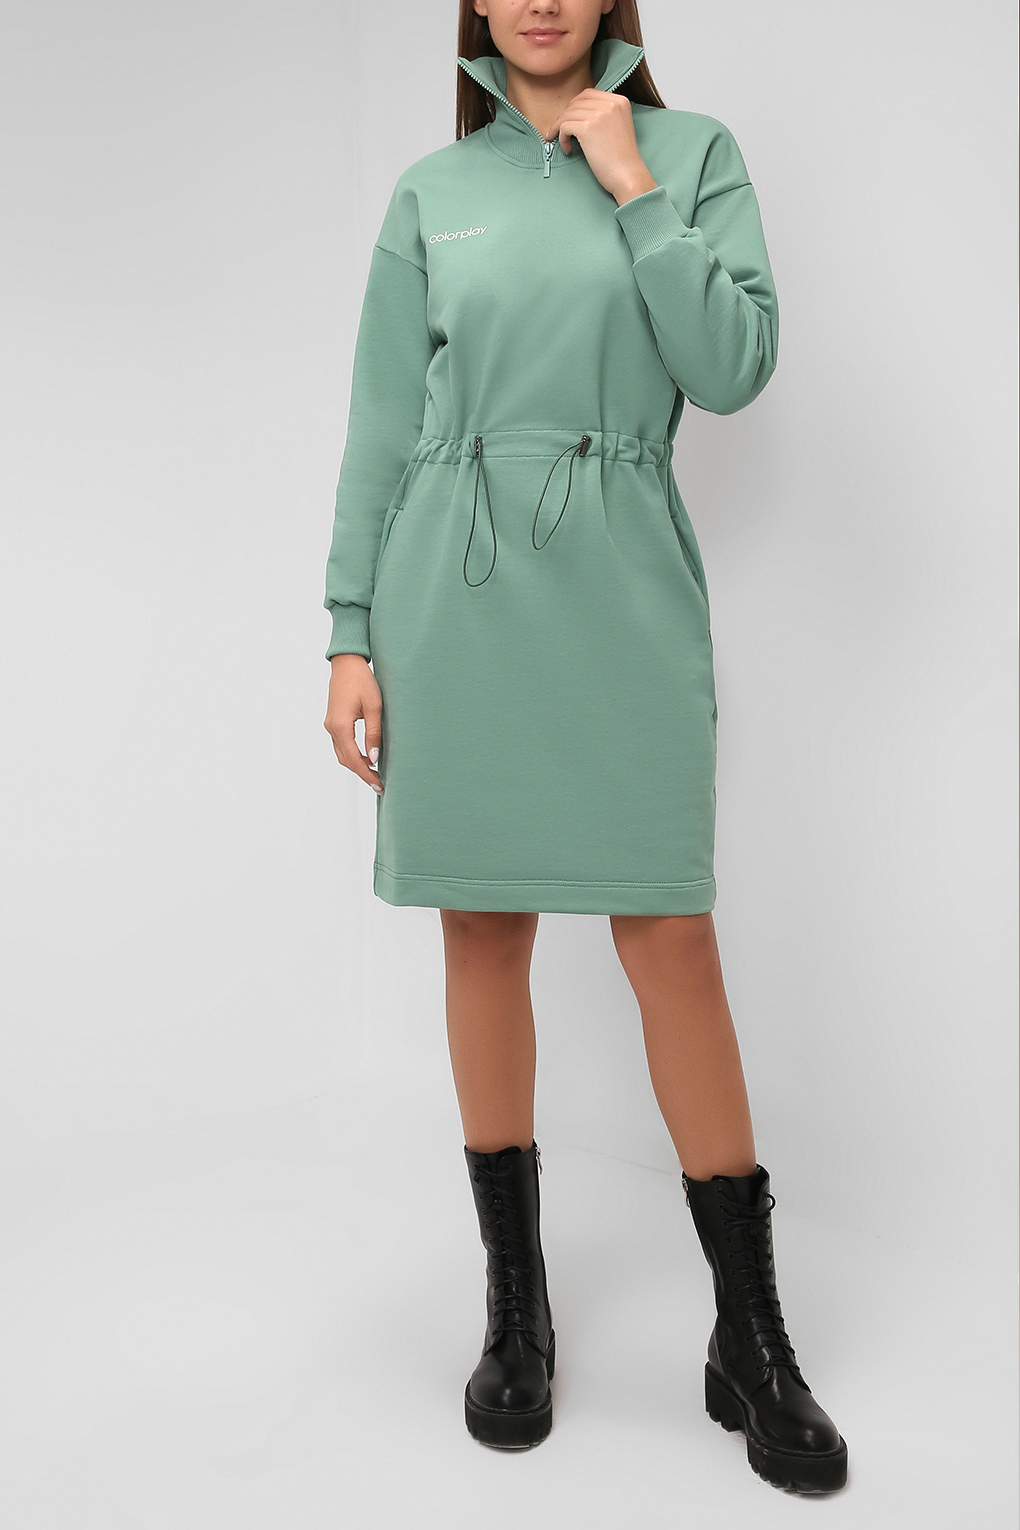 Платье женское COLORPLAY CP21085215 зеленое L